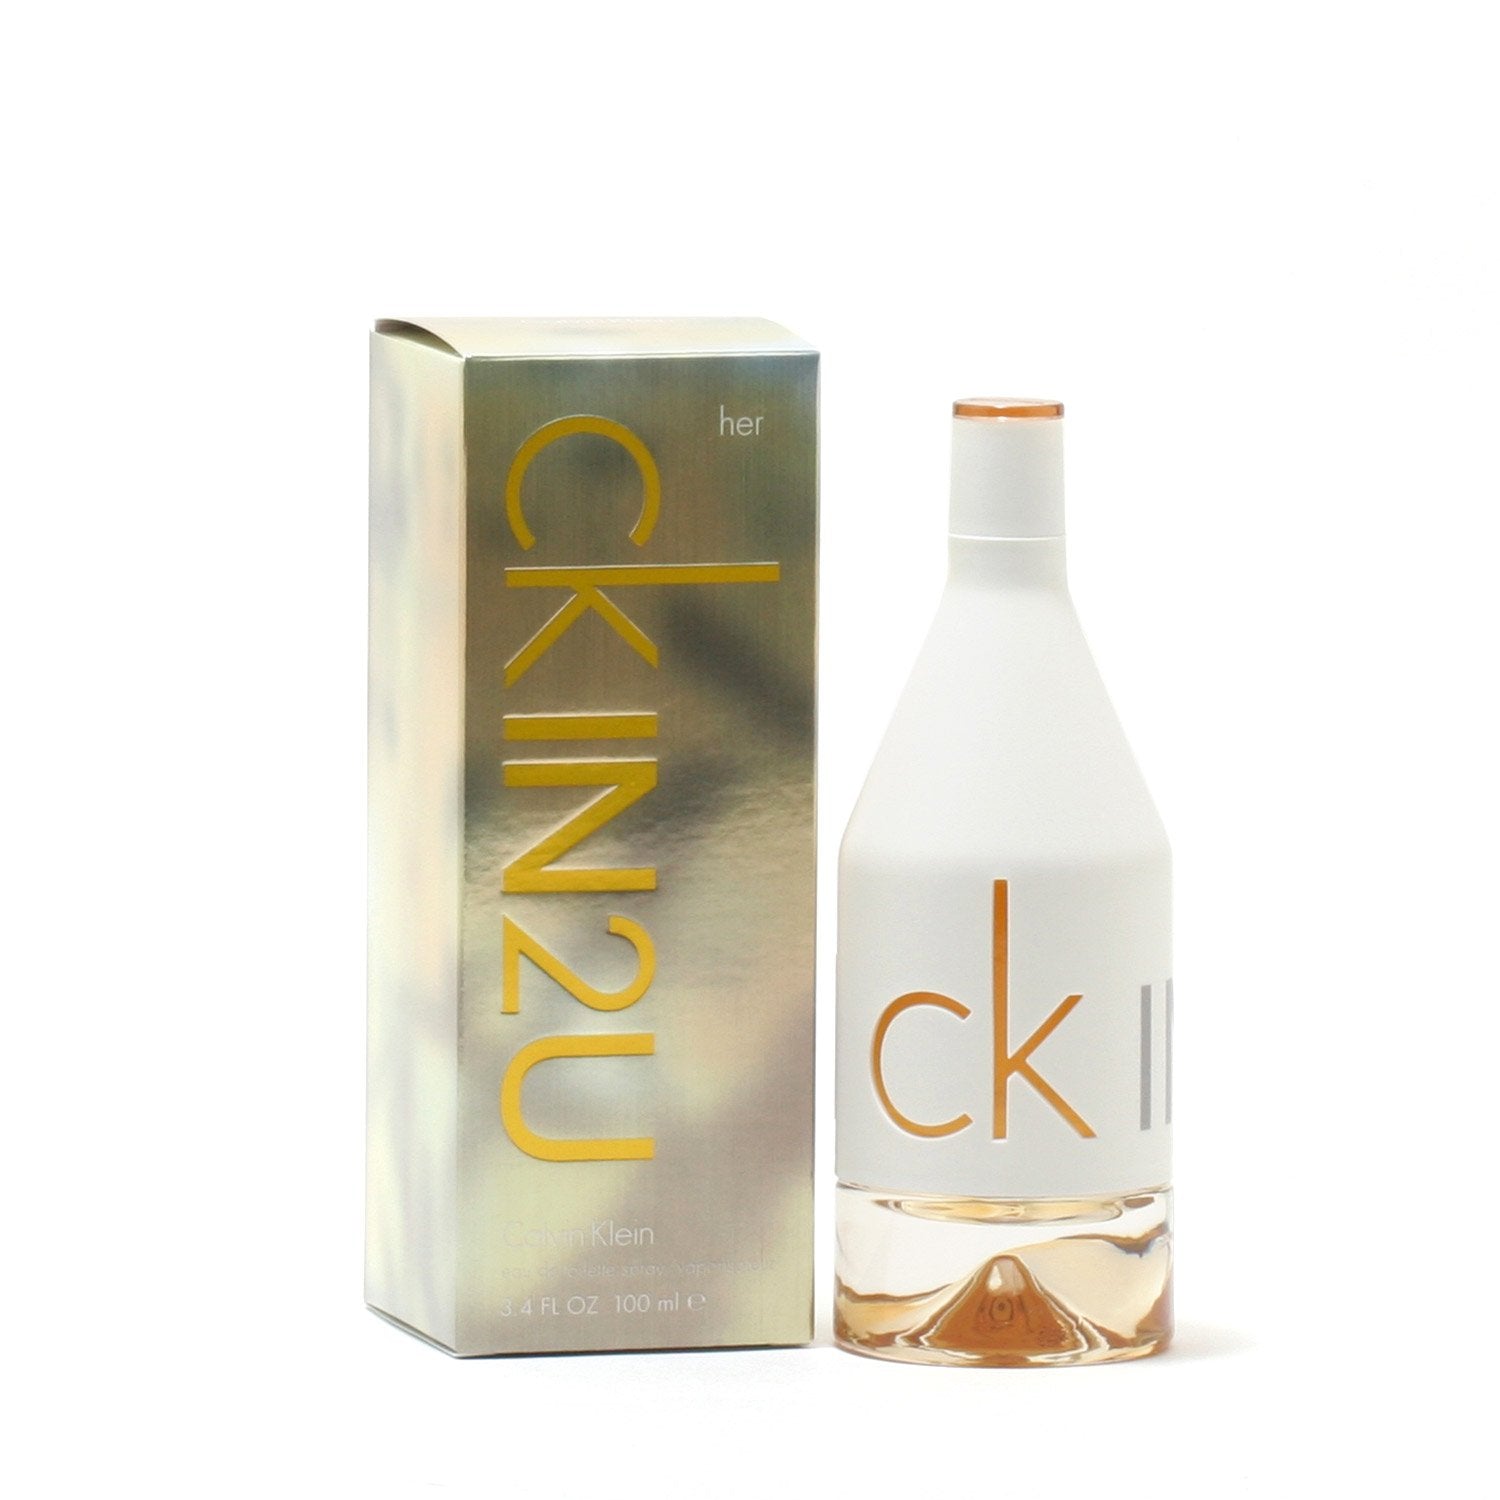 CK IN2U HER BY KLEIN DE SPRAY Room EAU CALVIN Fragrance – TOILETTE 